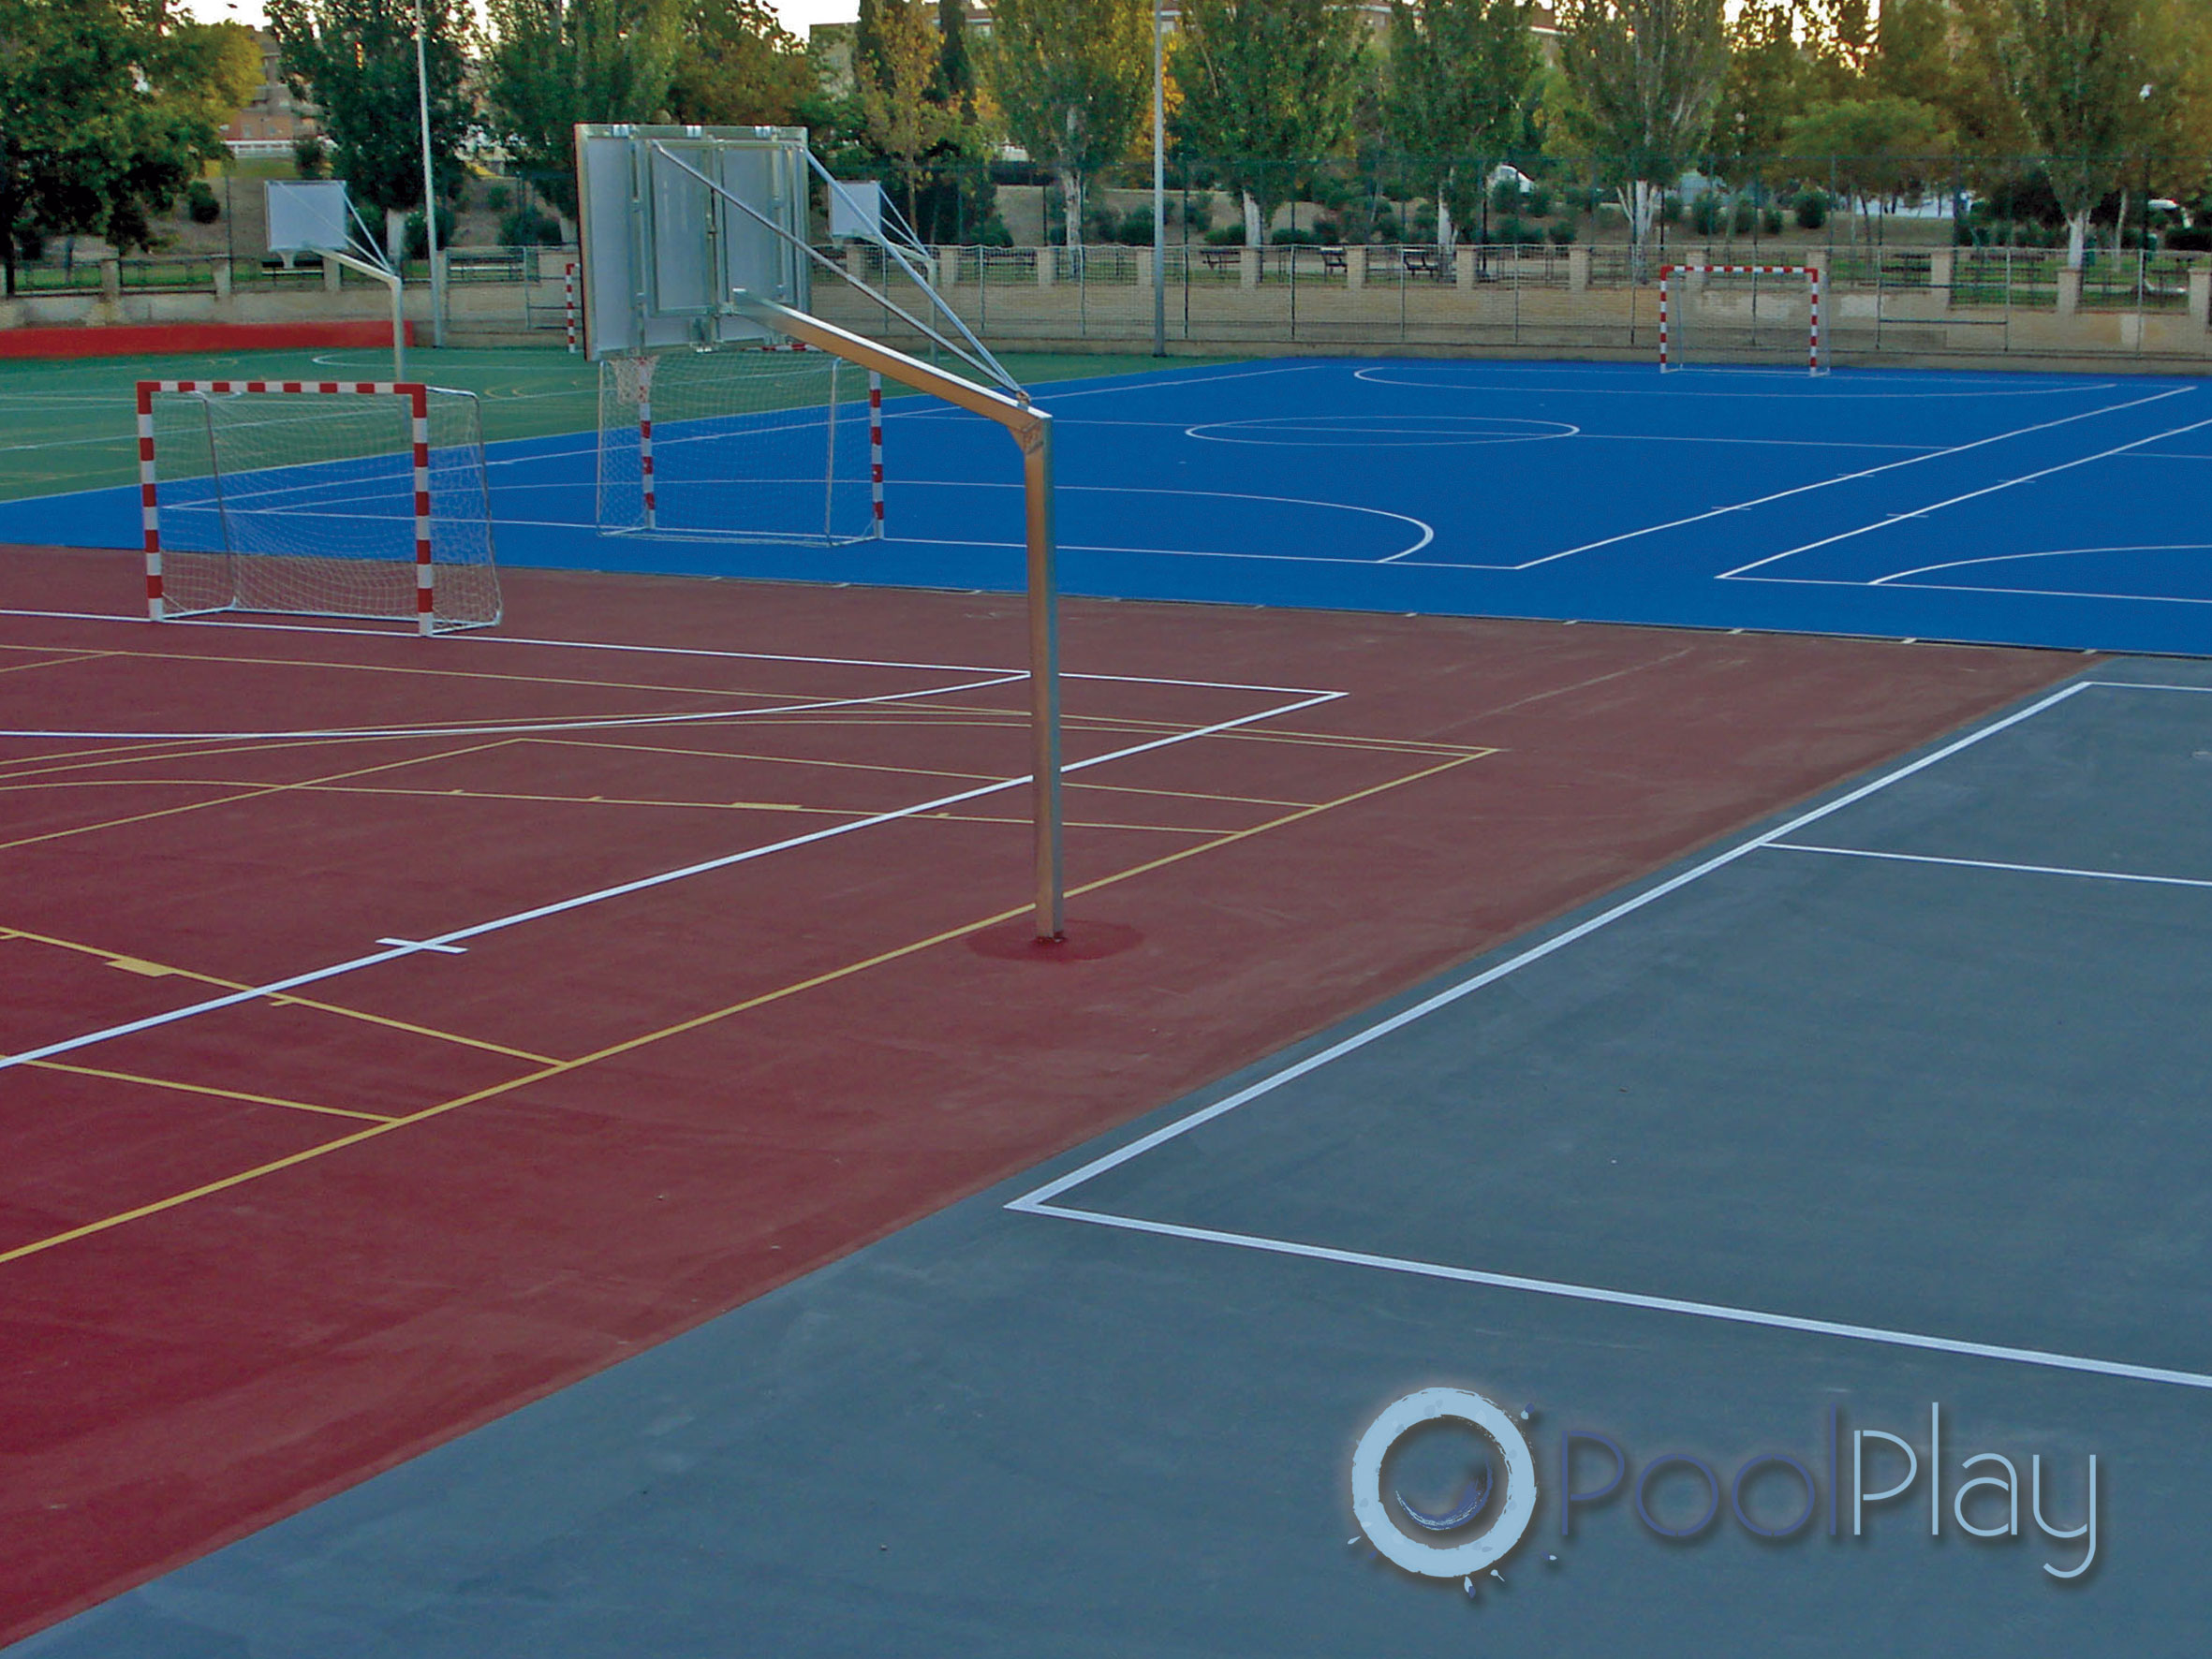 En PoolPlay somos especialistas en la construcción de pistas de tenis de resina sintética